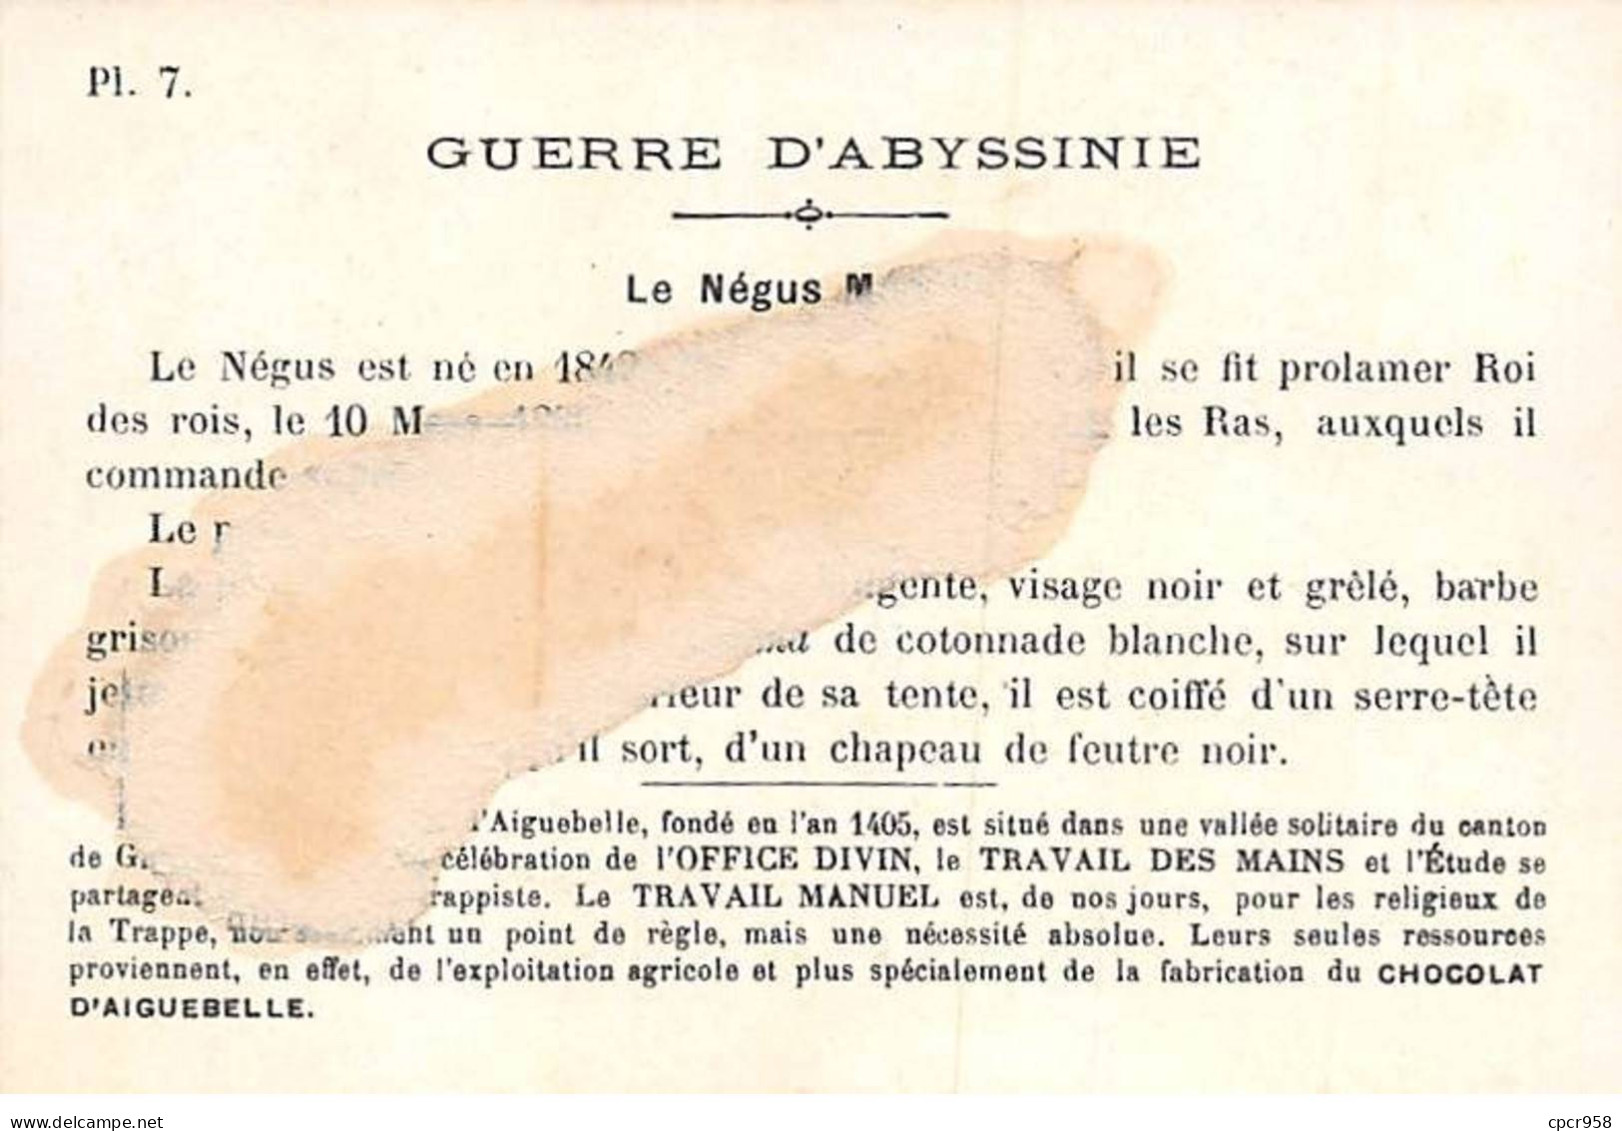 Chromos - COR14008 - Chocolaterie D'Aiguebelle - Guerre D'Abyssinie -Hommes - Négus Ménélik- 10x6 Cm  - En L'état - Aiguebelle